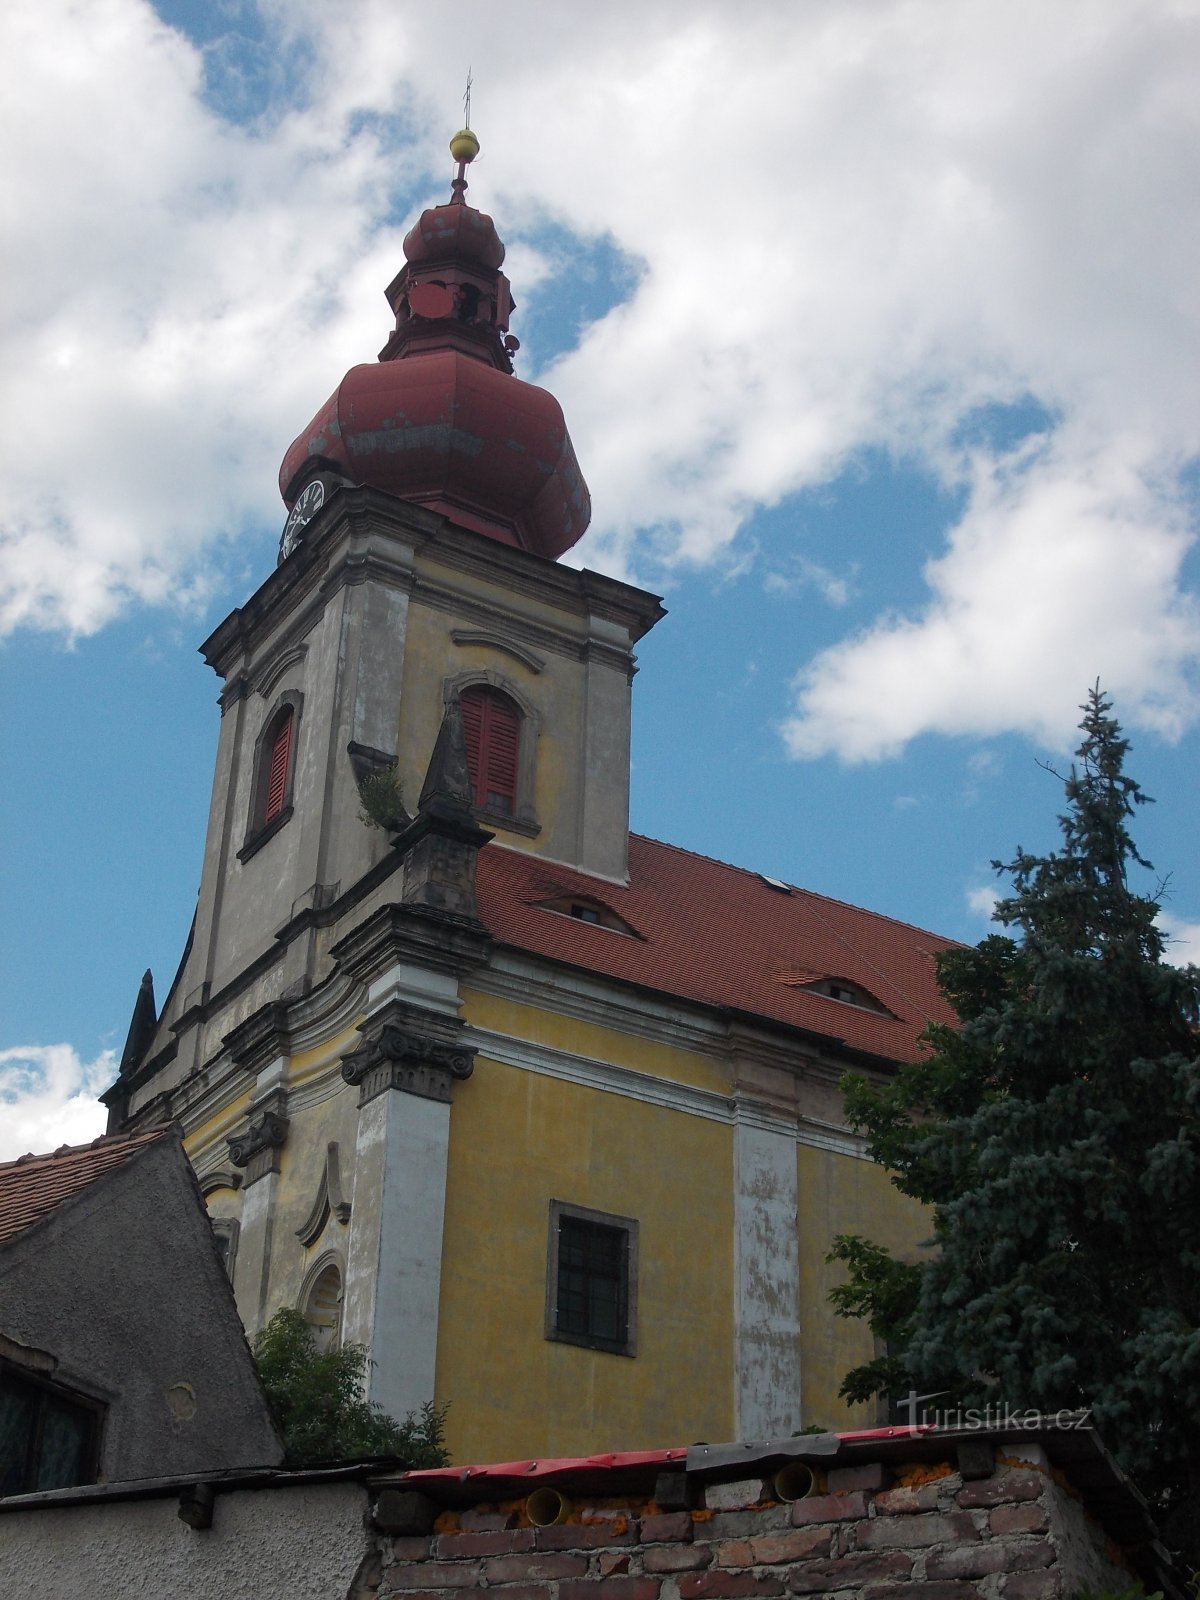 eine Kirche mit einem eingebauten prismatischen Turm, gekrönt von einem zwiebelförmigen Turm